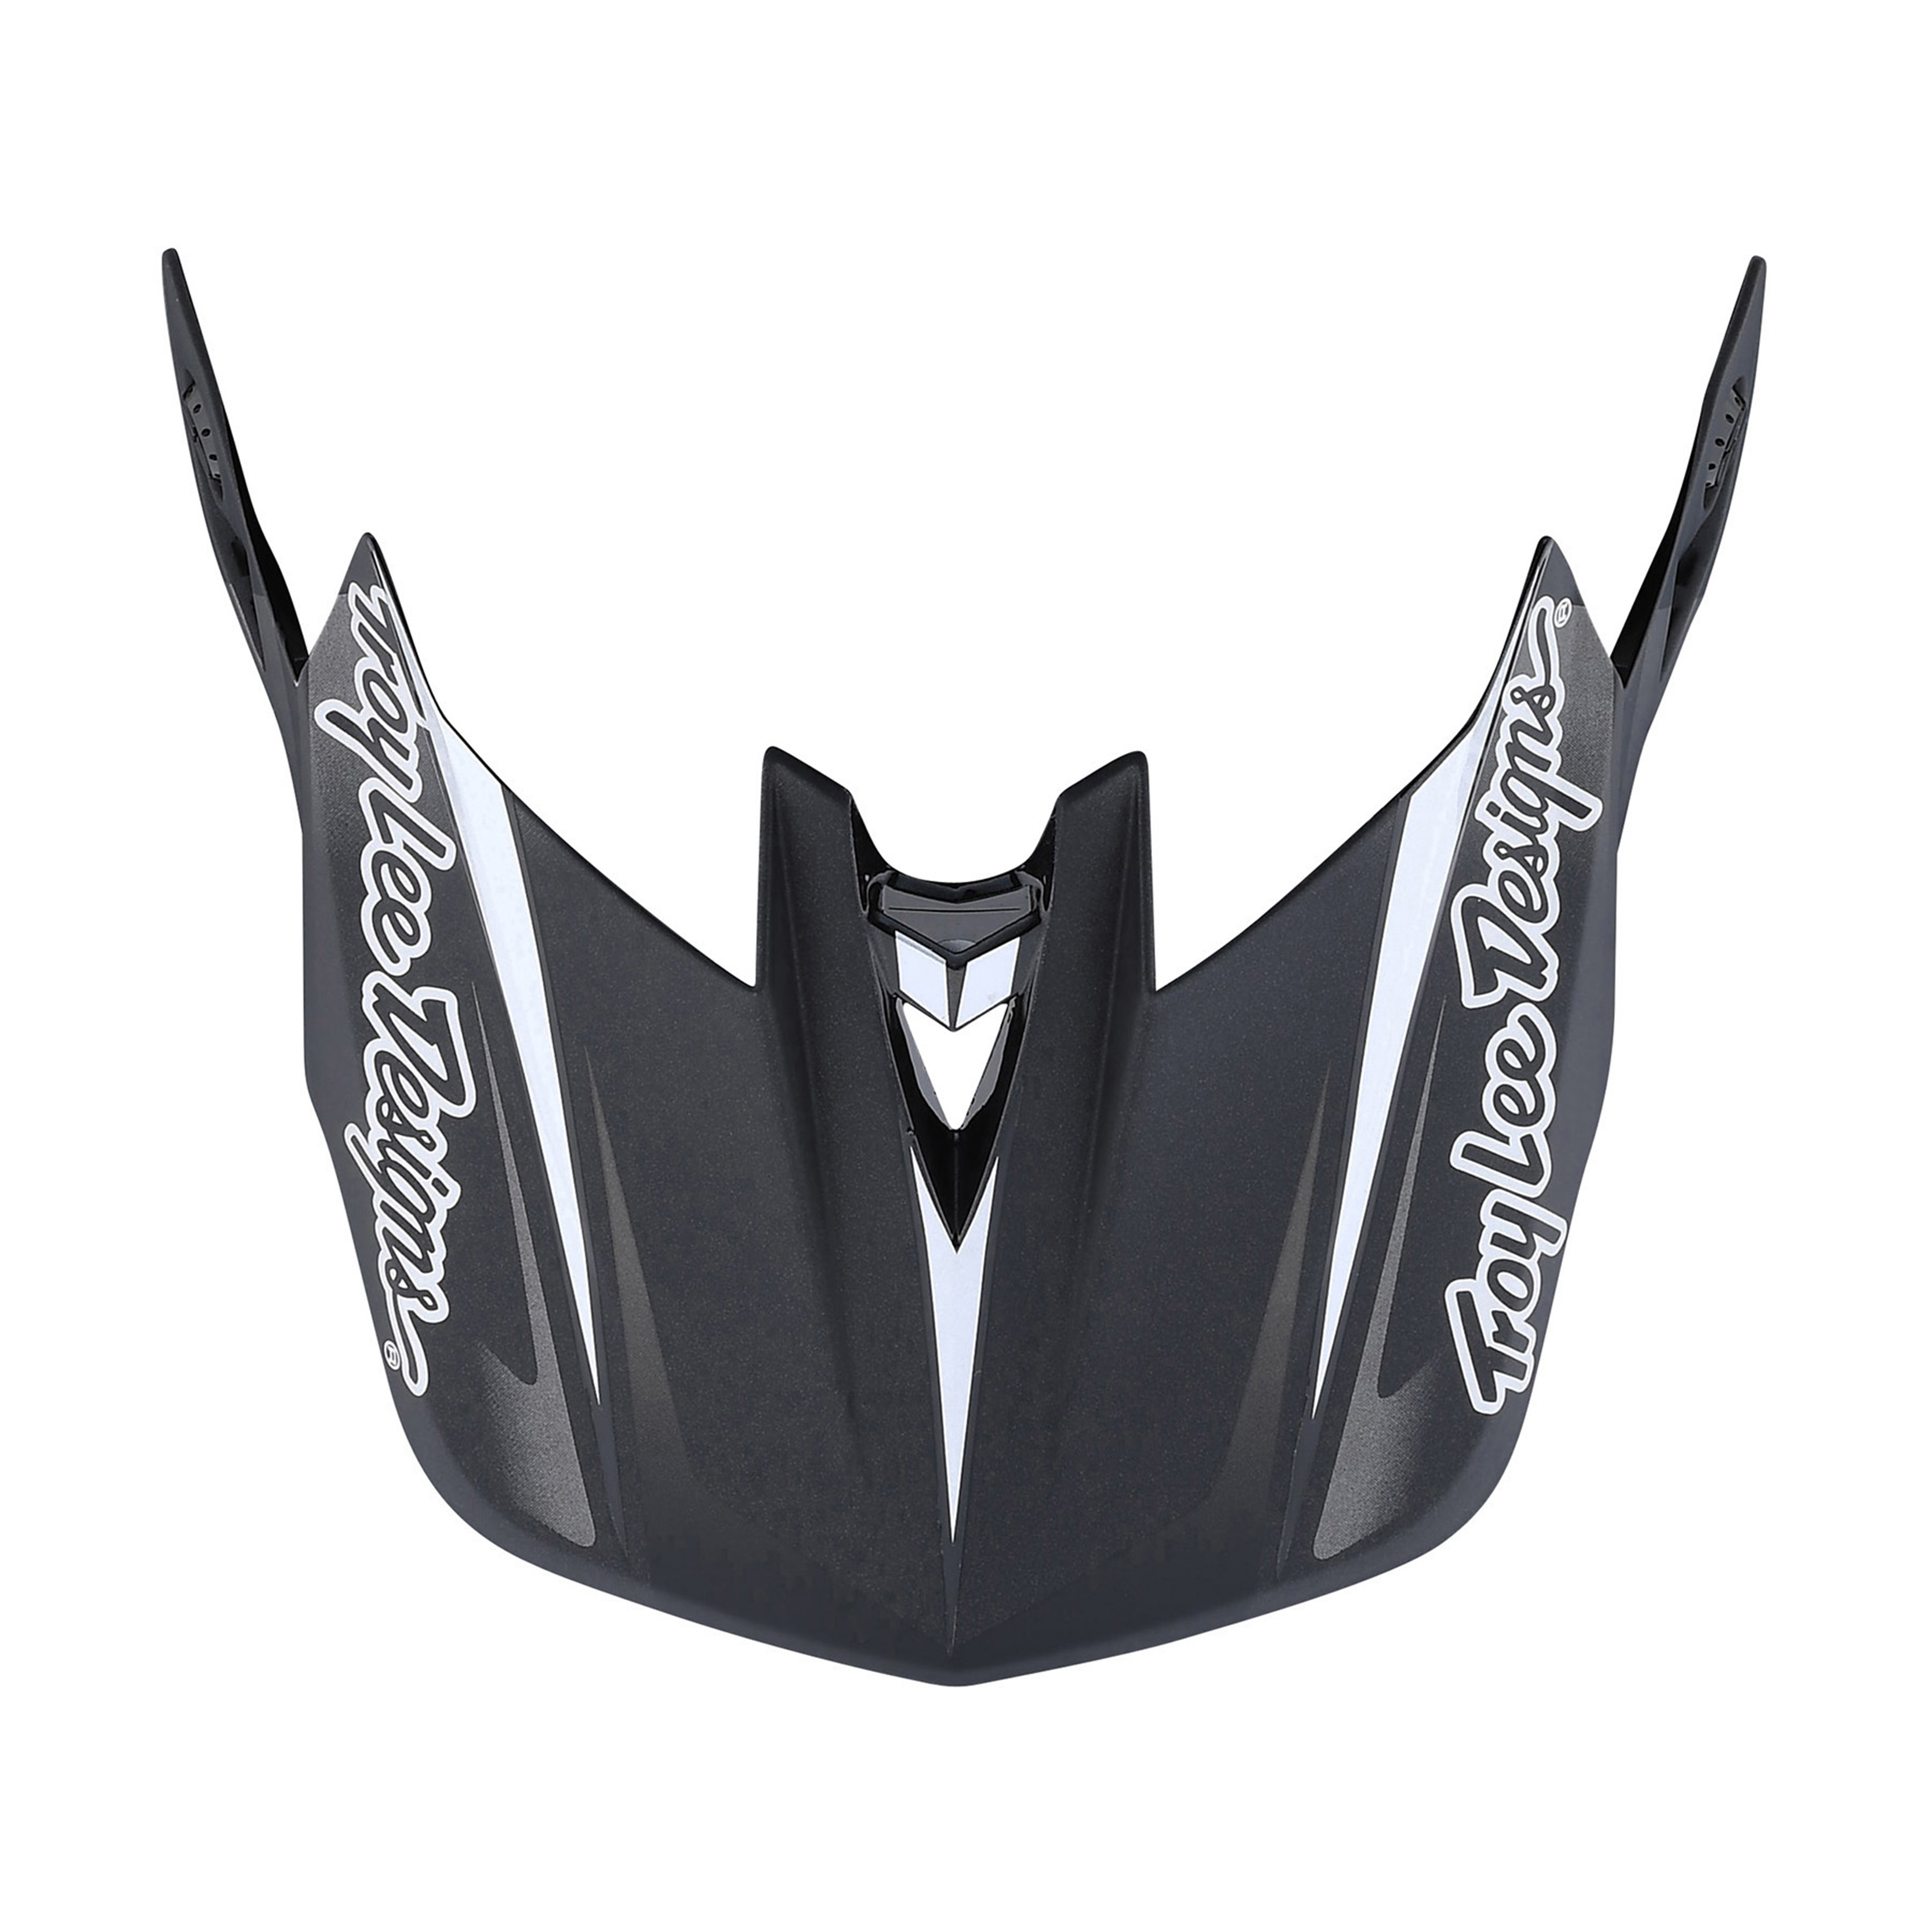 트로이리 디자인 D4 카본 헬멧 (라인 블랙/그레이)